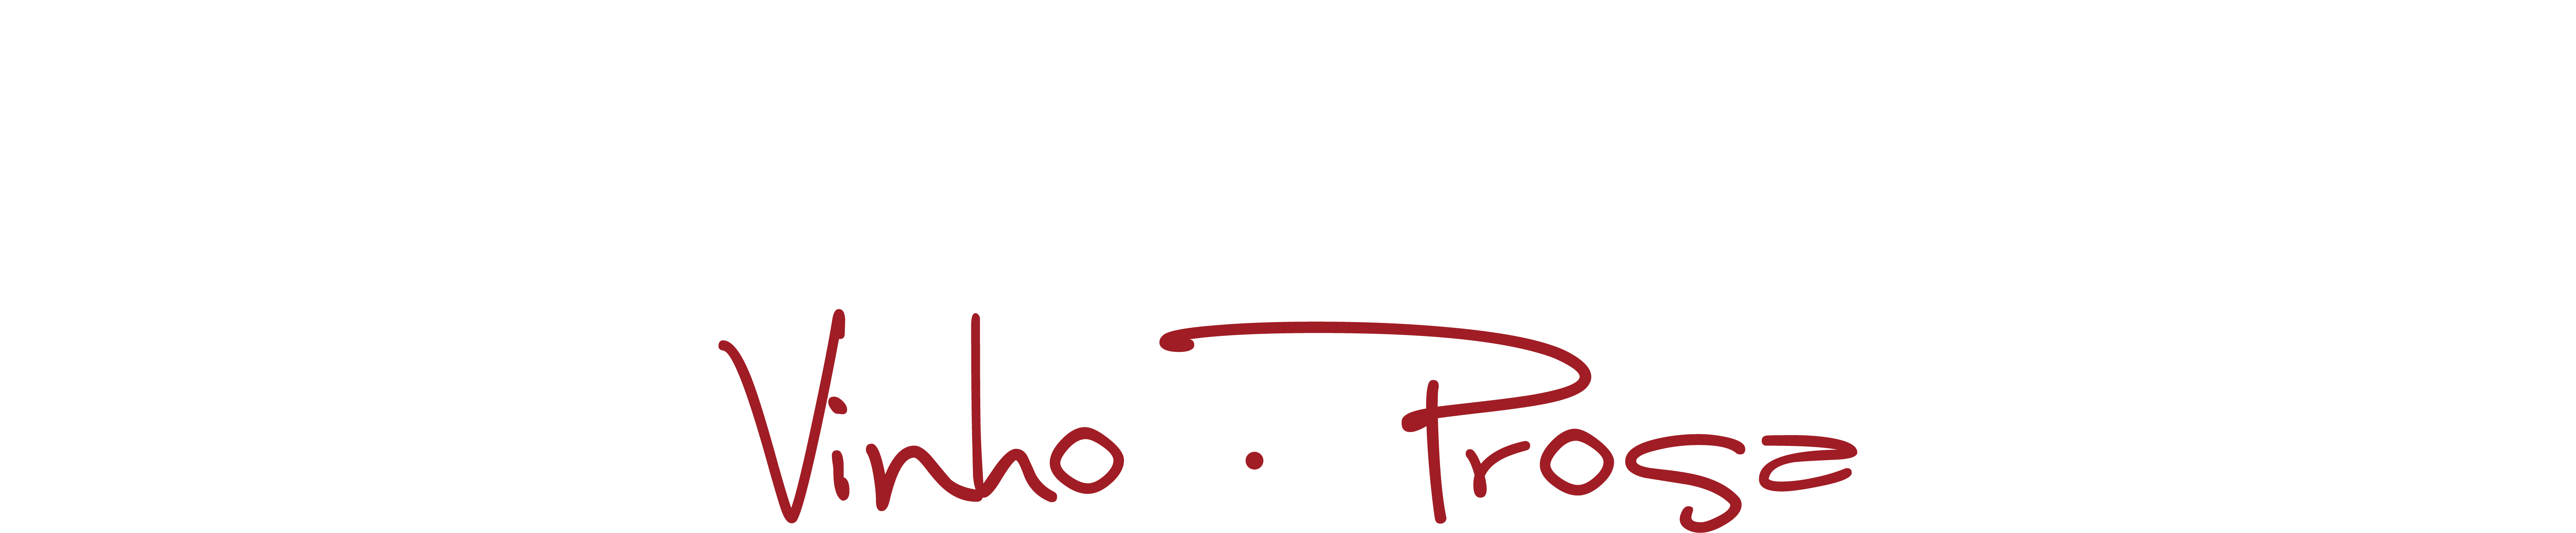 Logotipo em negativo